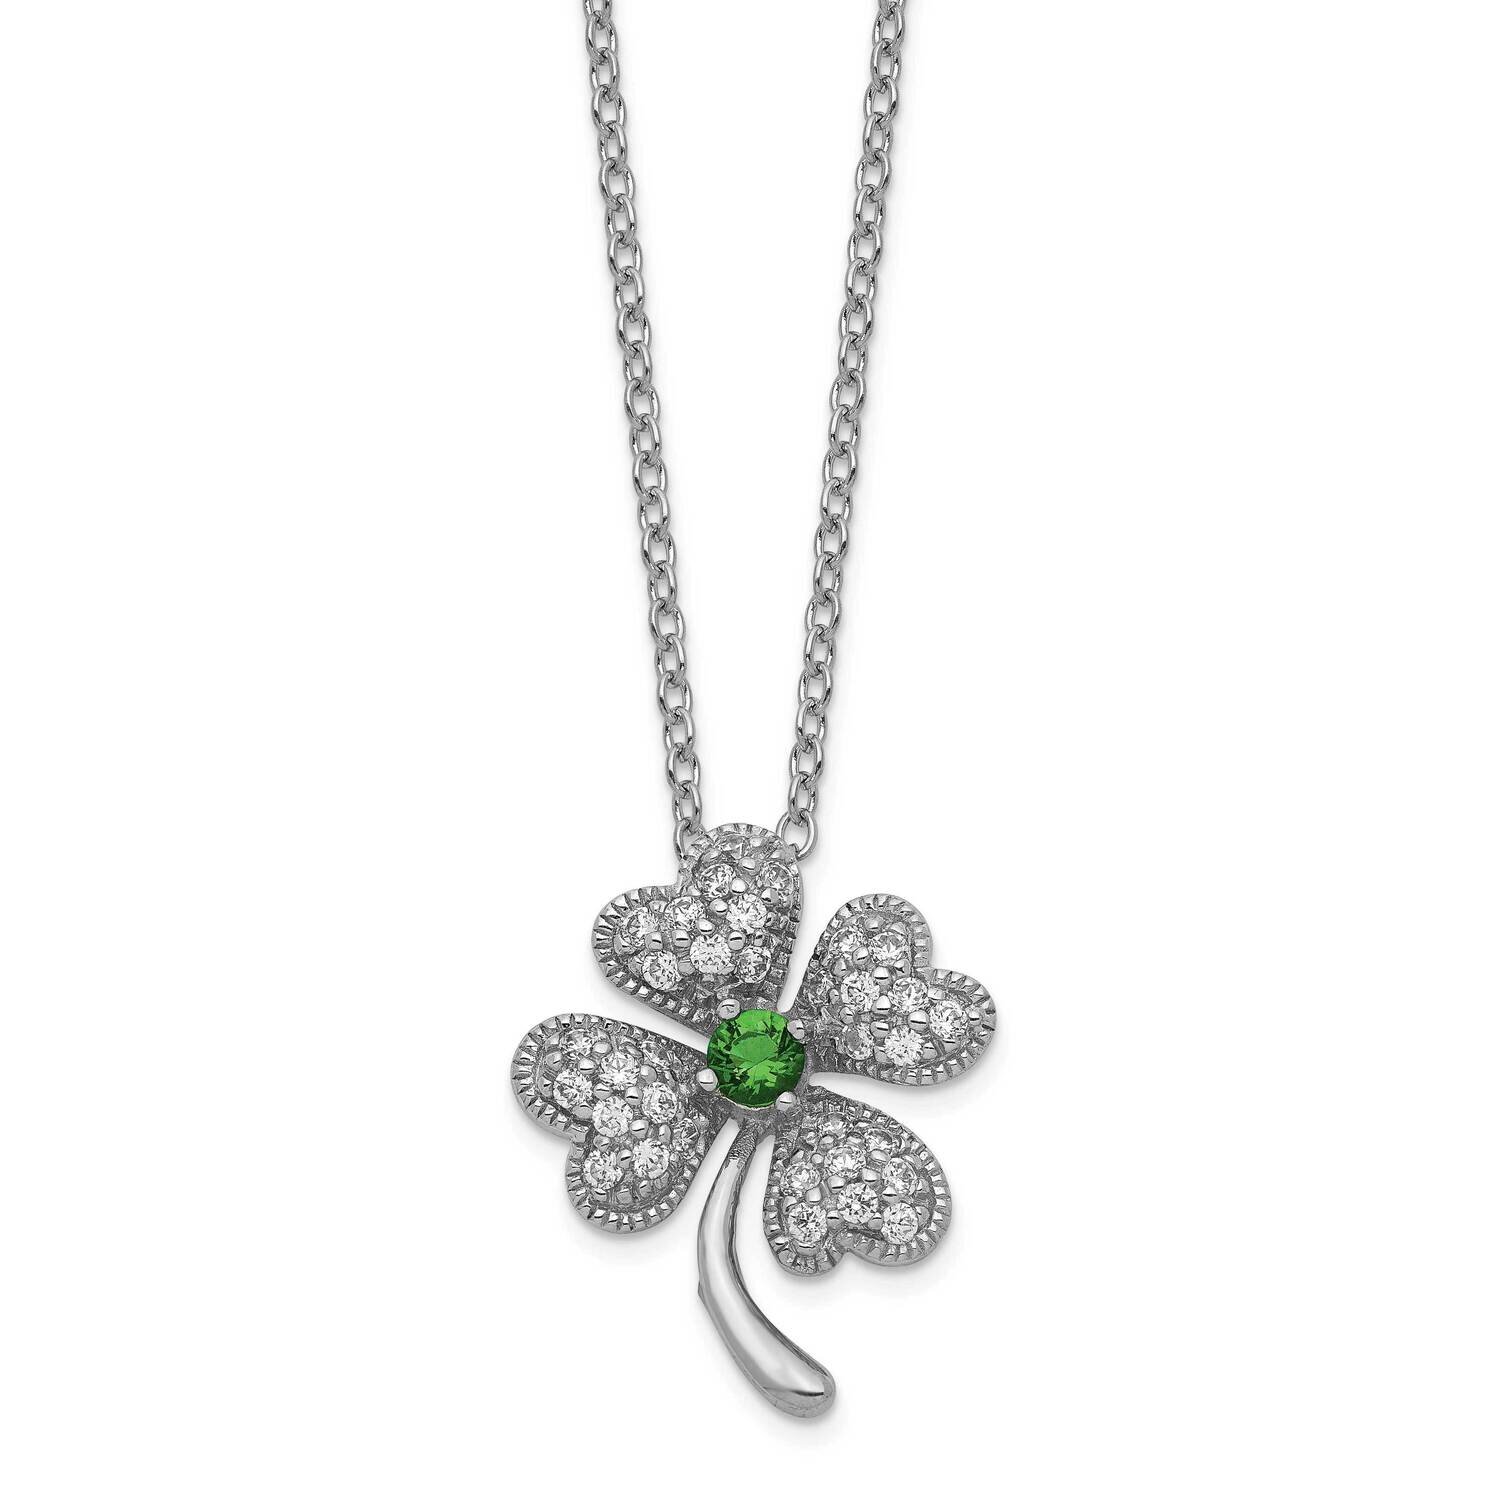 Cheryl M Glass Sim.Emerald & Cz 4-Leaf Clover 18 Inch Necklace Sterling Silver Rhodium-plated QCM367-18